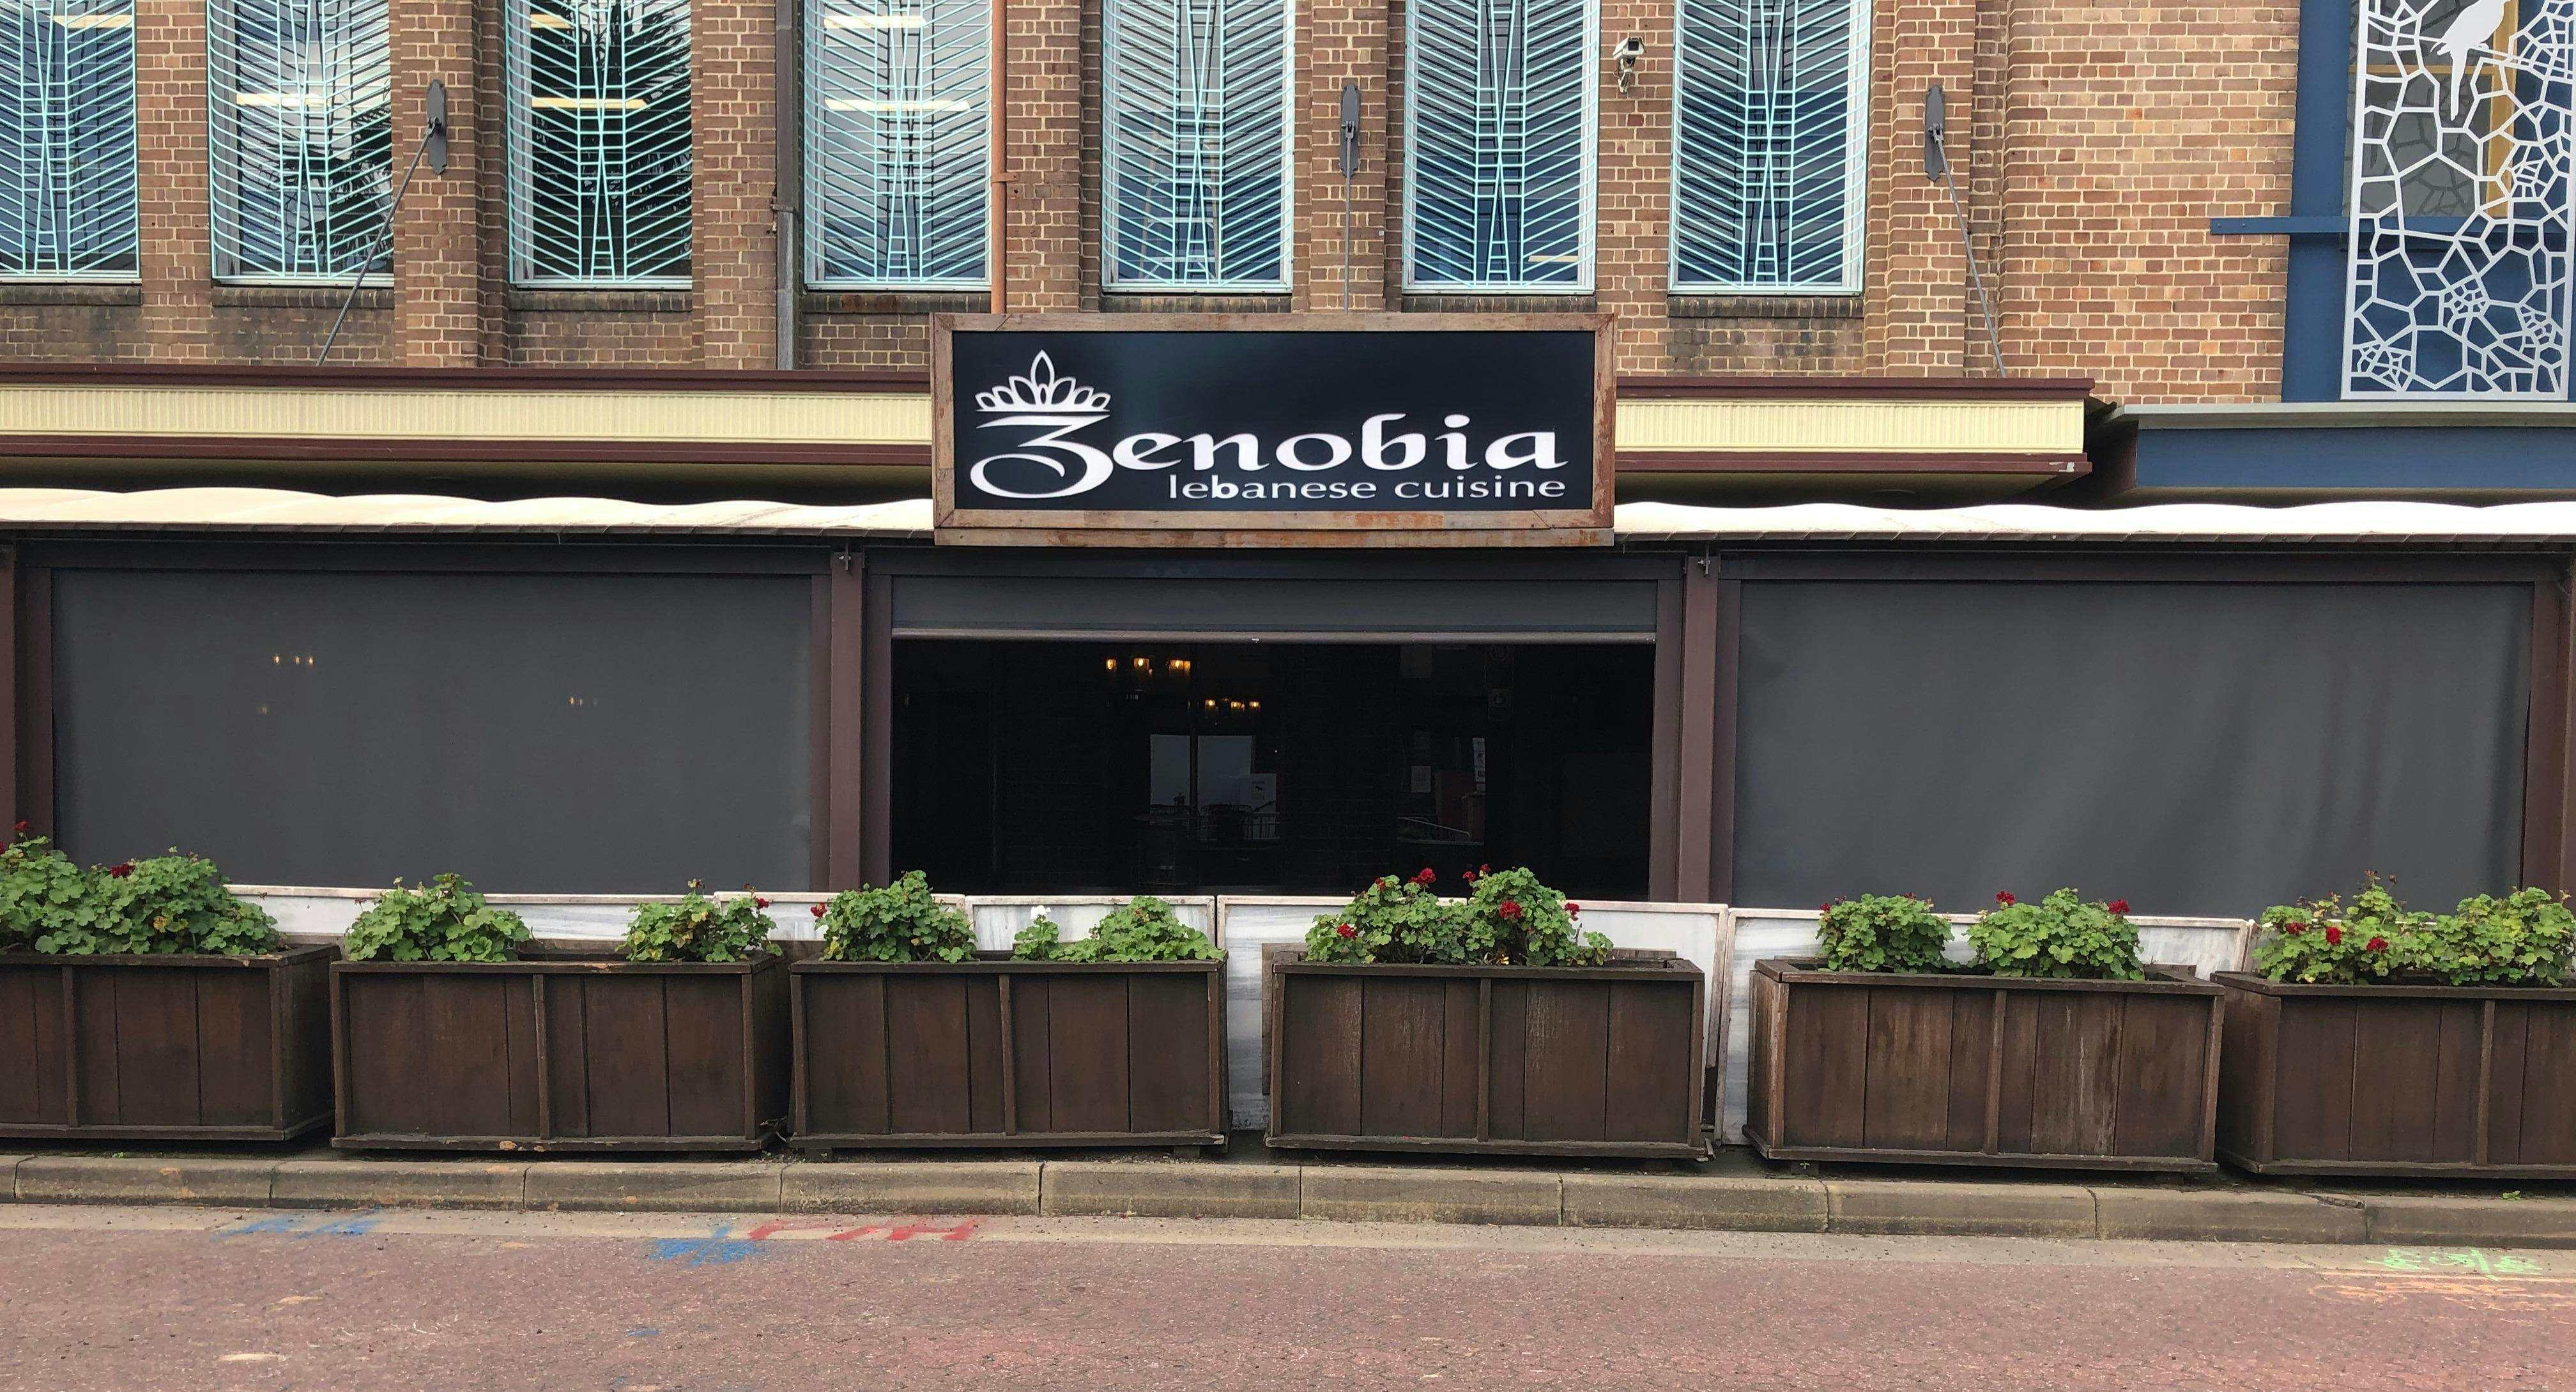 Photo of restaurant Zenobia in North Strathfield, Sydney